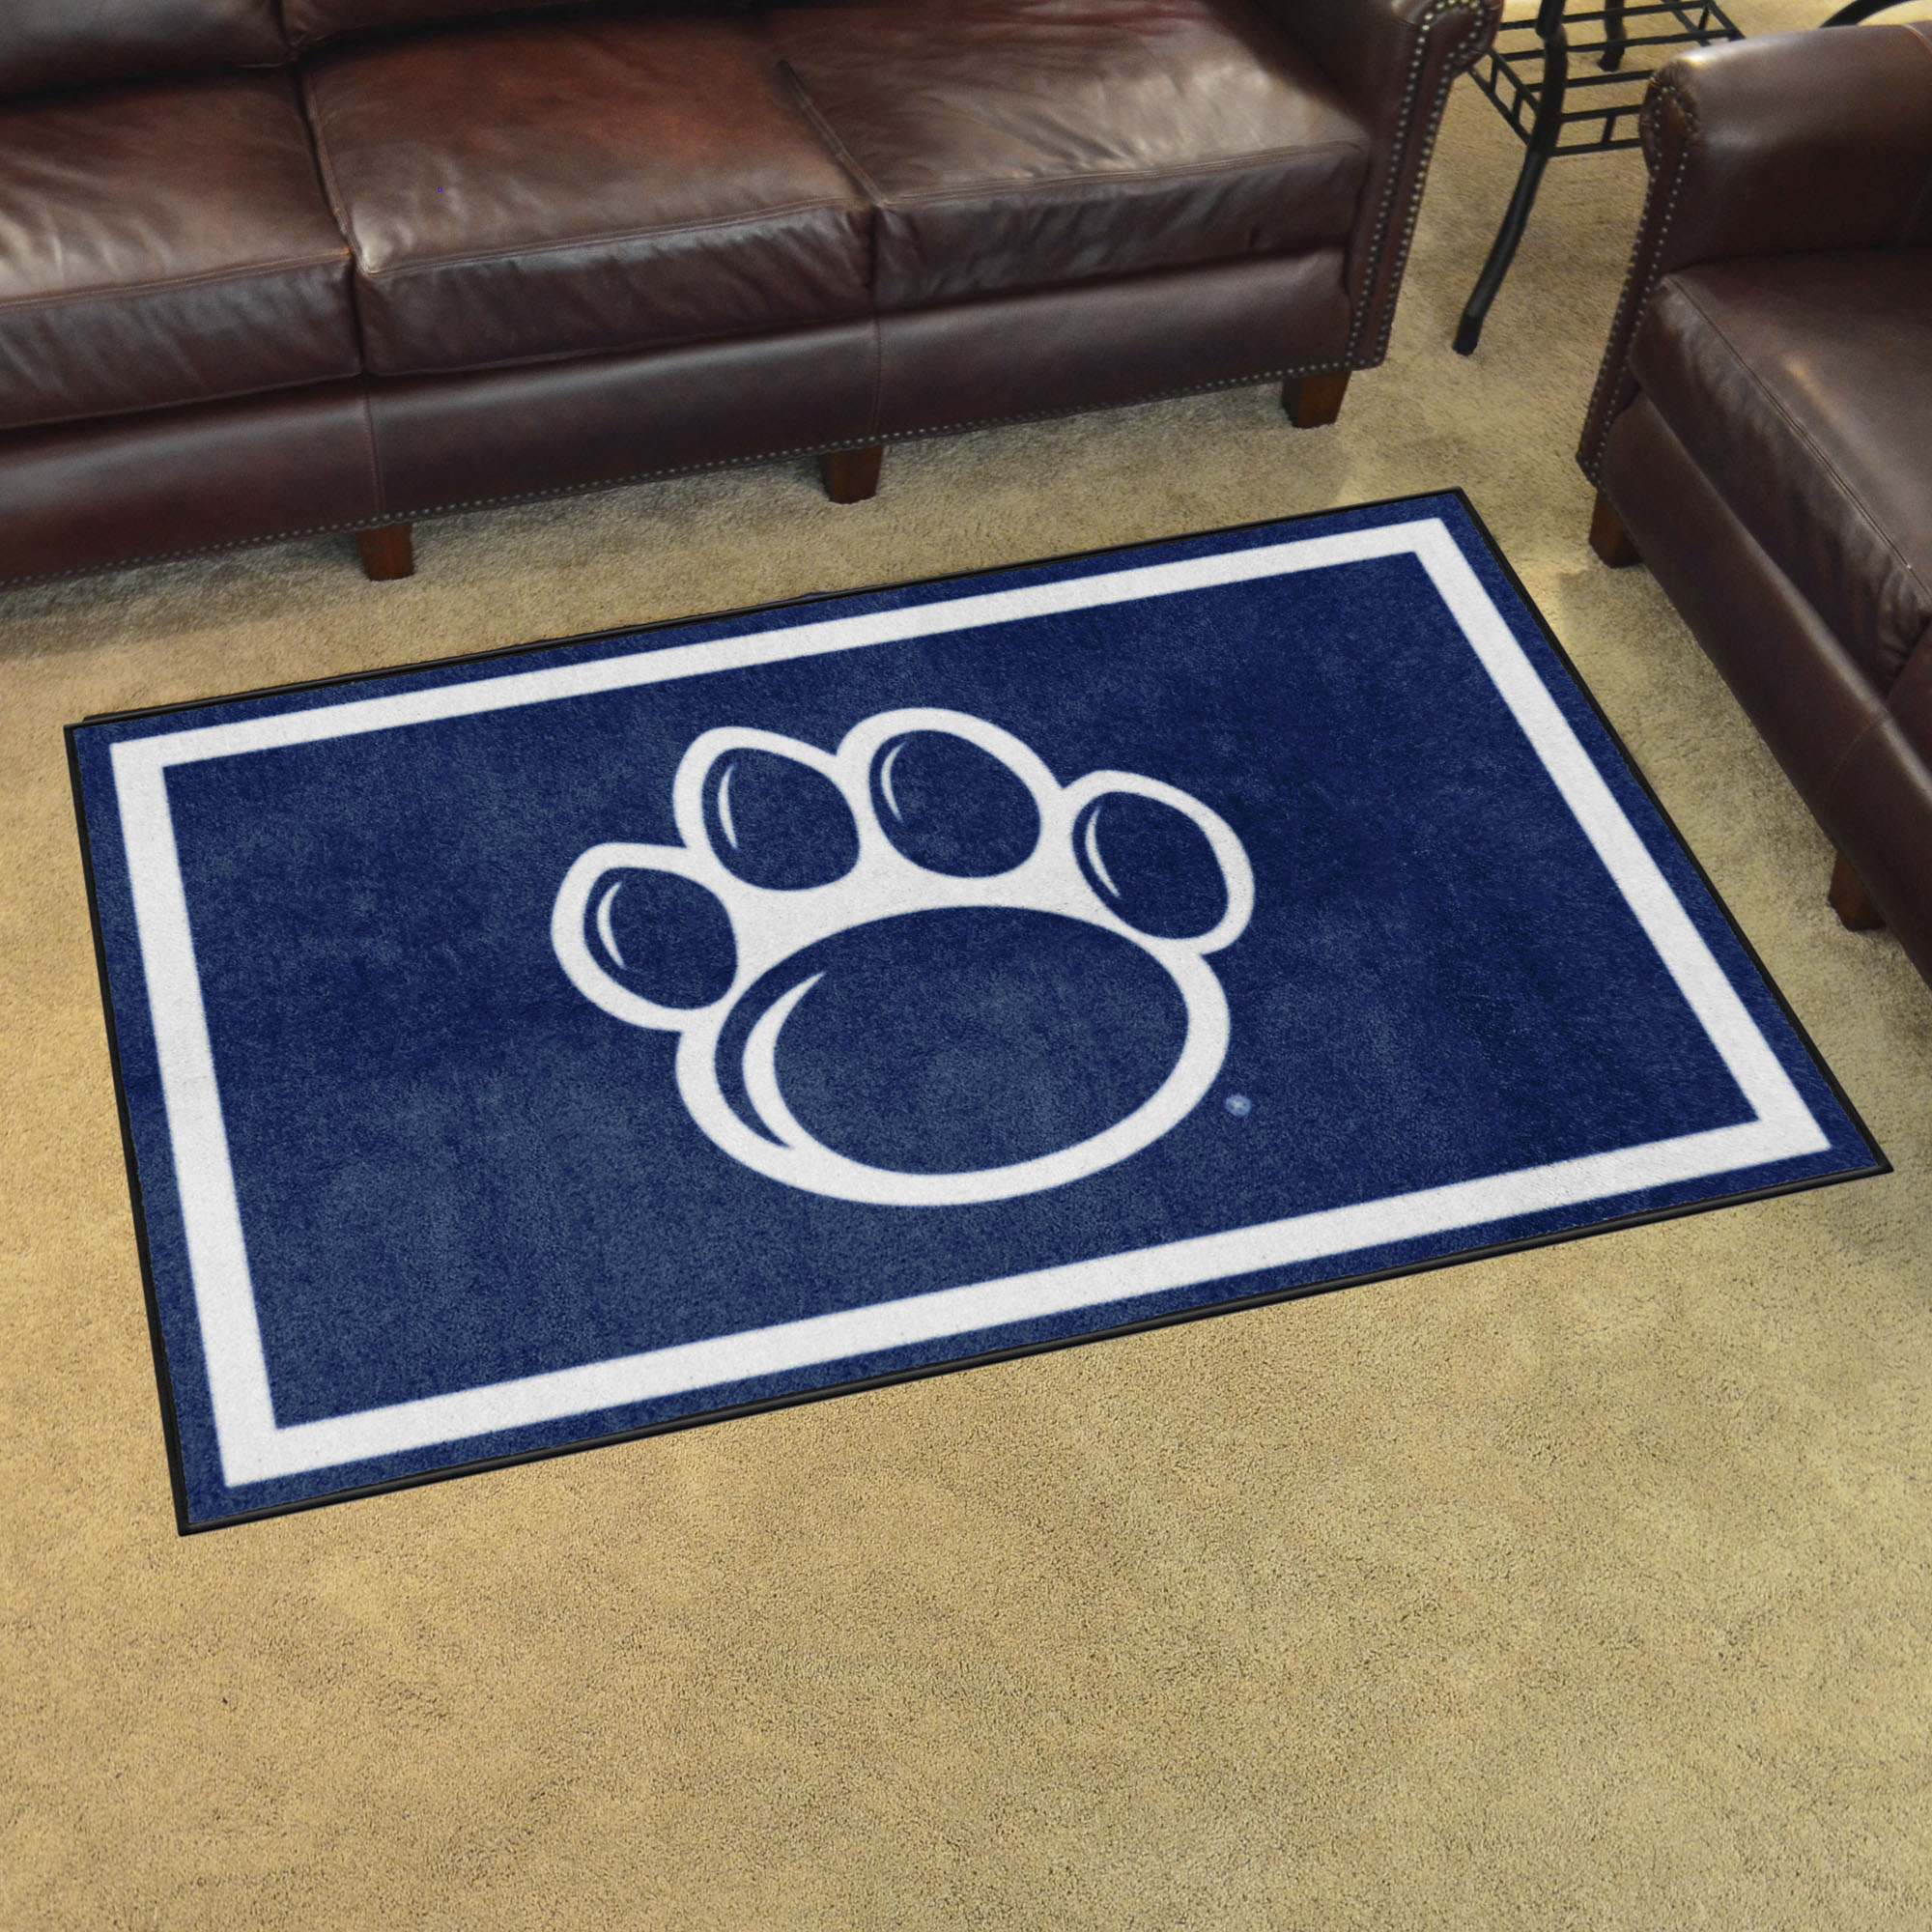 Penn State Nittany Lions Area Rug - 4' x 6' Alt Logo Nylon